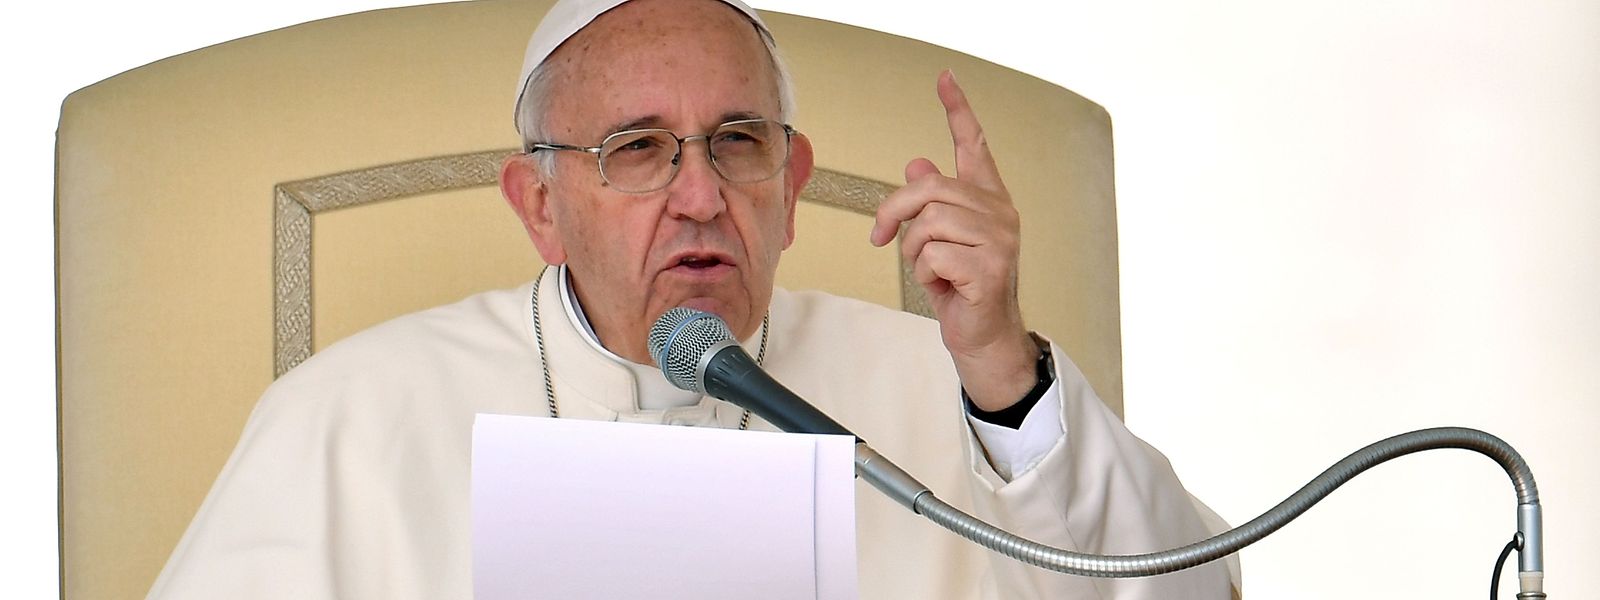 Der Papst wendet sich gegen eine pauschale Verurteilung von Menschen, die nach einer kirchlichen Heirat und späteren Scheidung eine zivile Ehe eingehen.